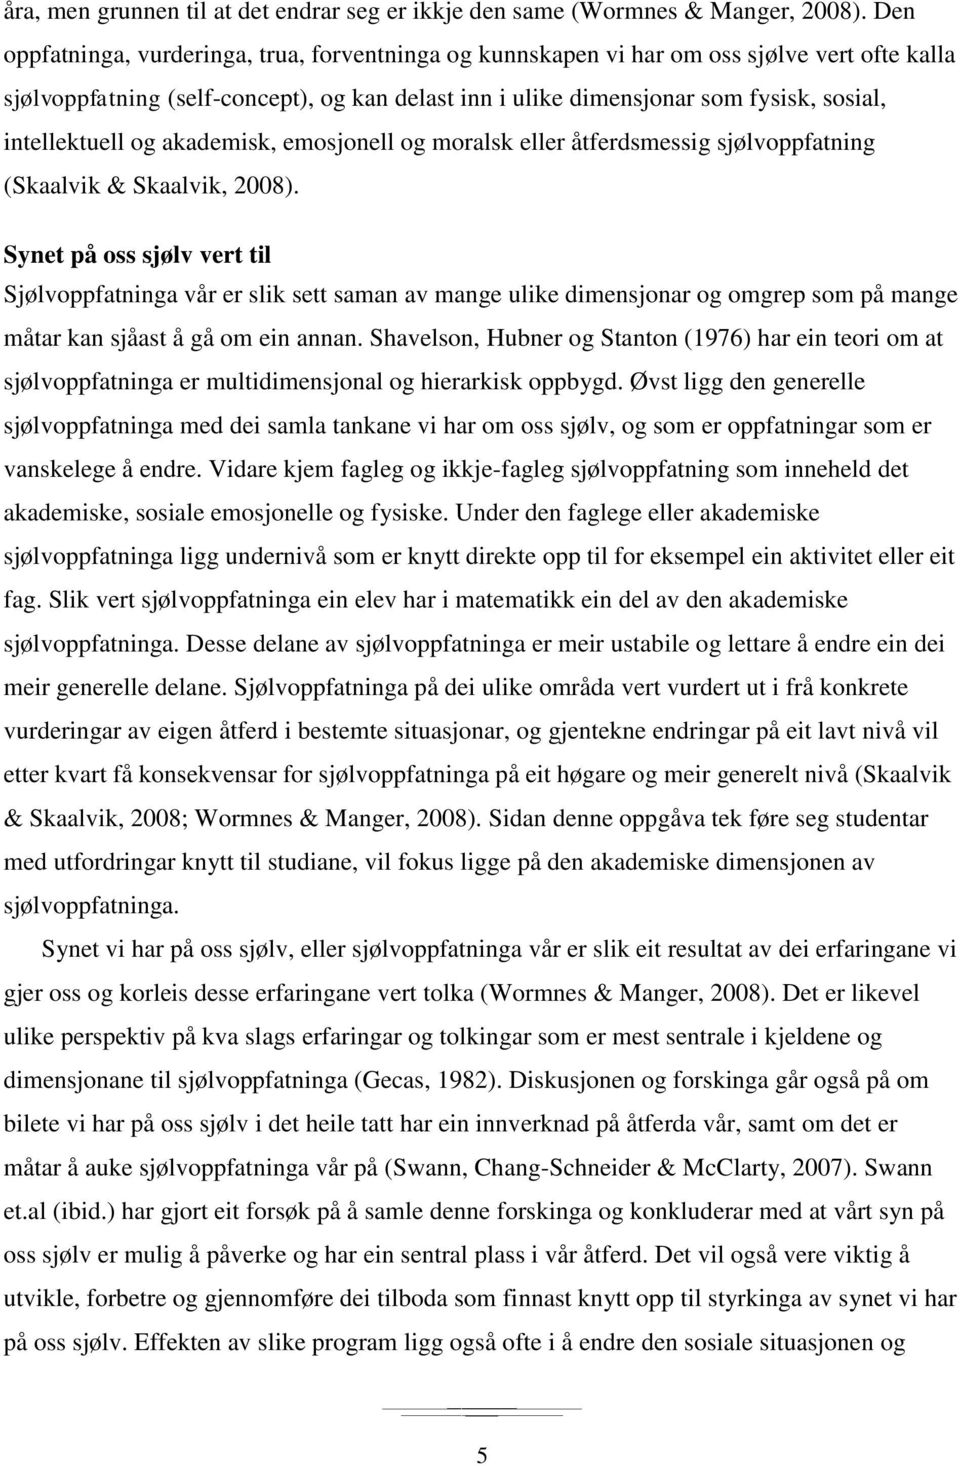 intellektuell og akademisk, emosjonell og moralsk eller åtferdsmessig sjølvoppfatning (Skaalvik & Skaalvik, 2008).